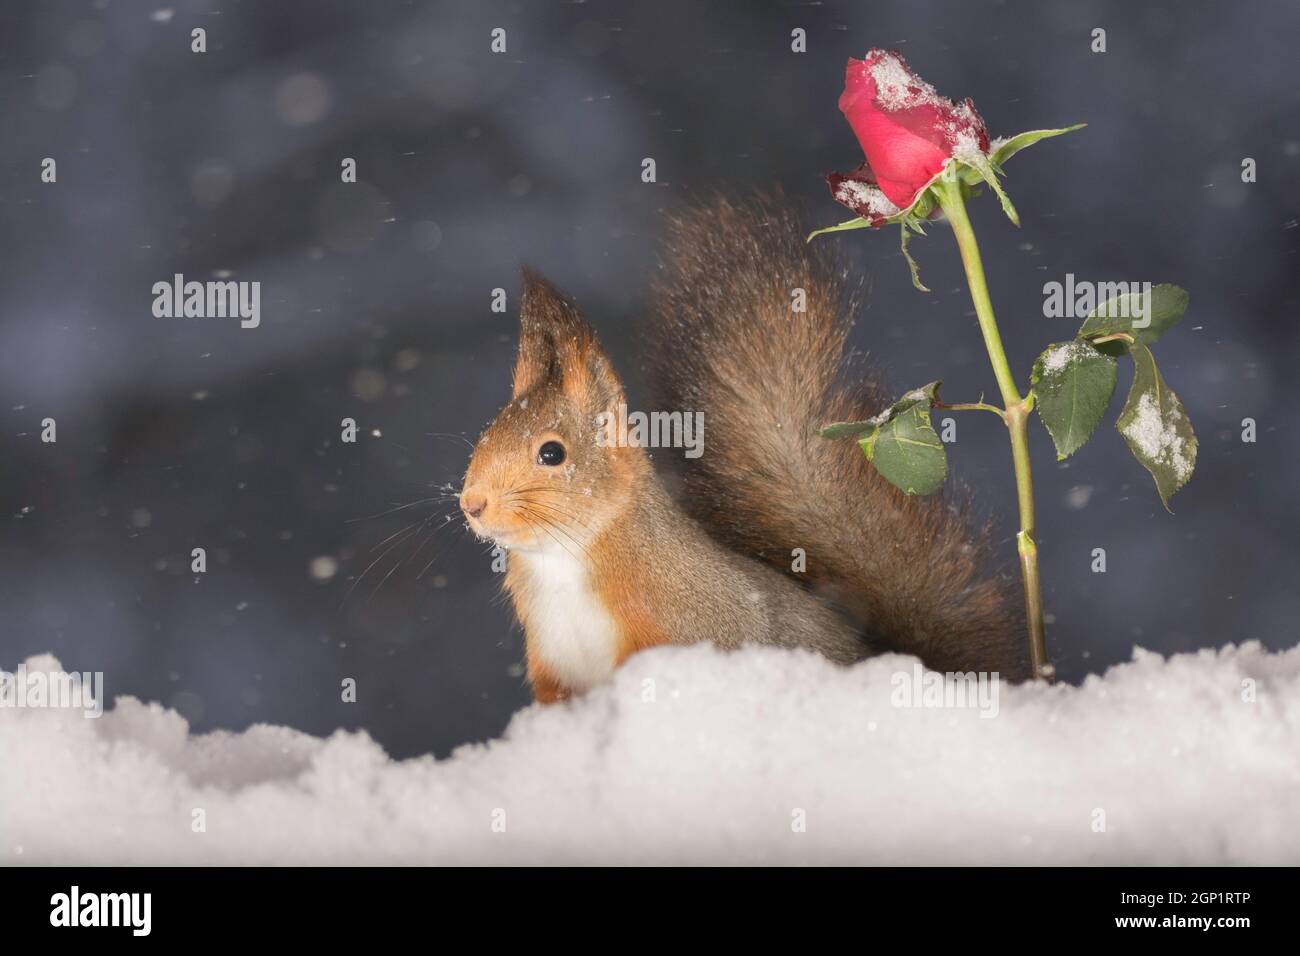 Eichhörnchen stehen neben einer roten Rose während schneit Stockfoto